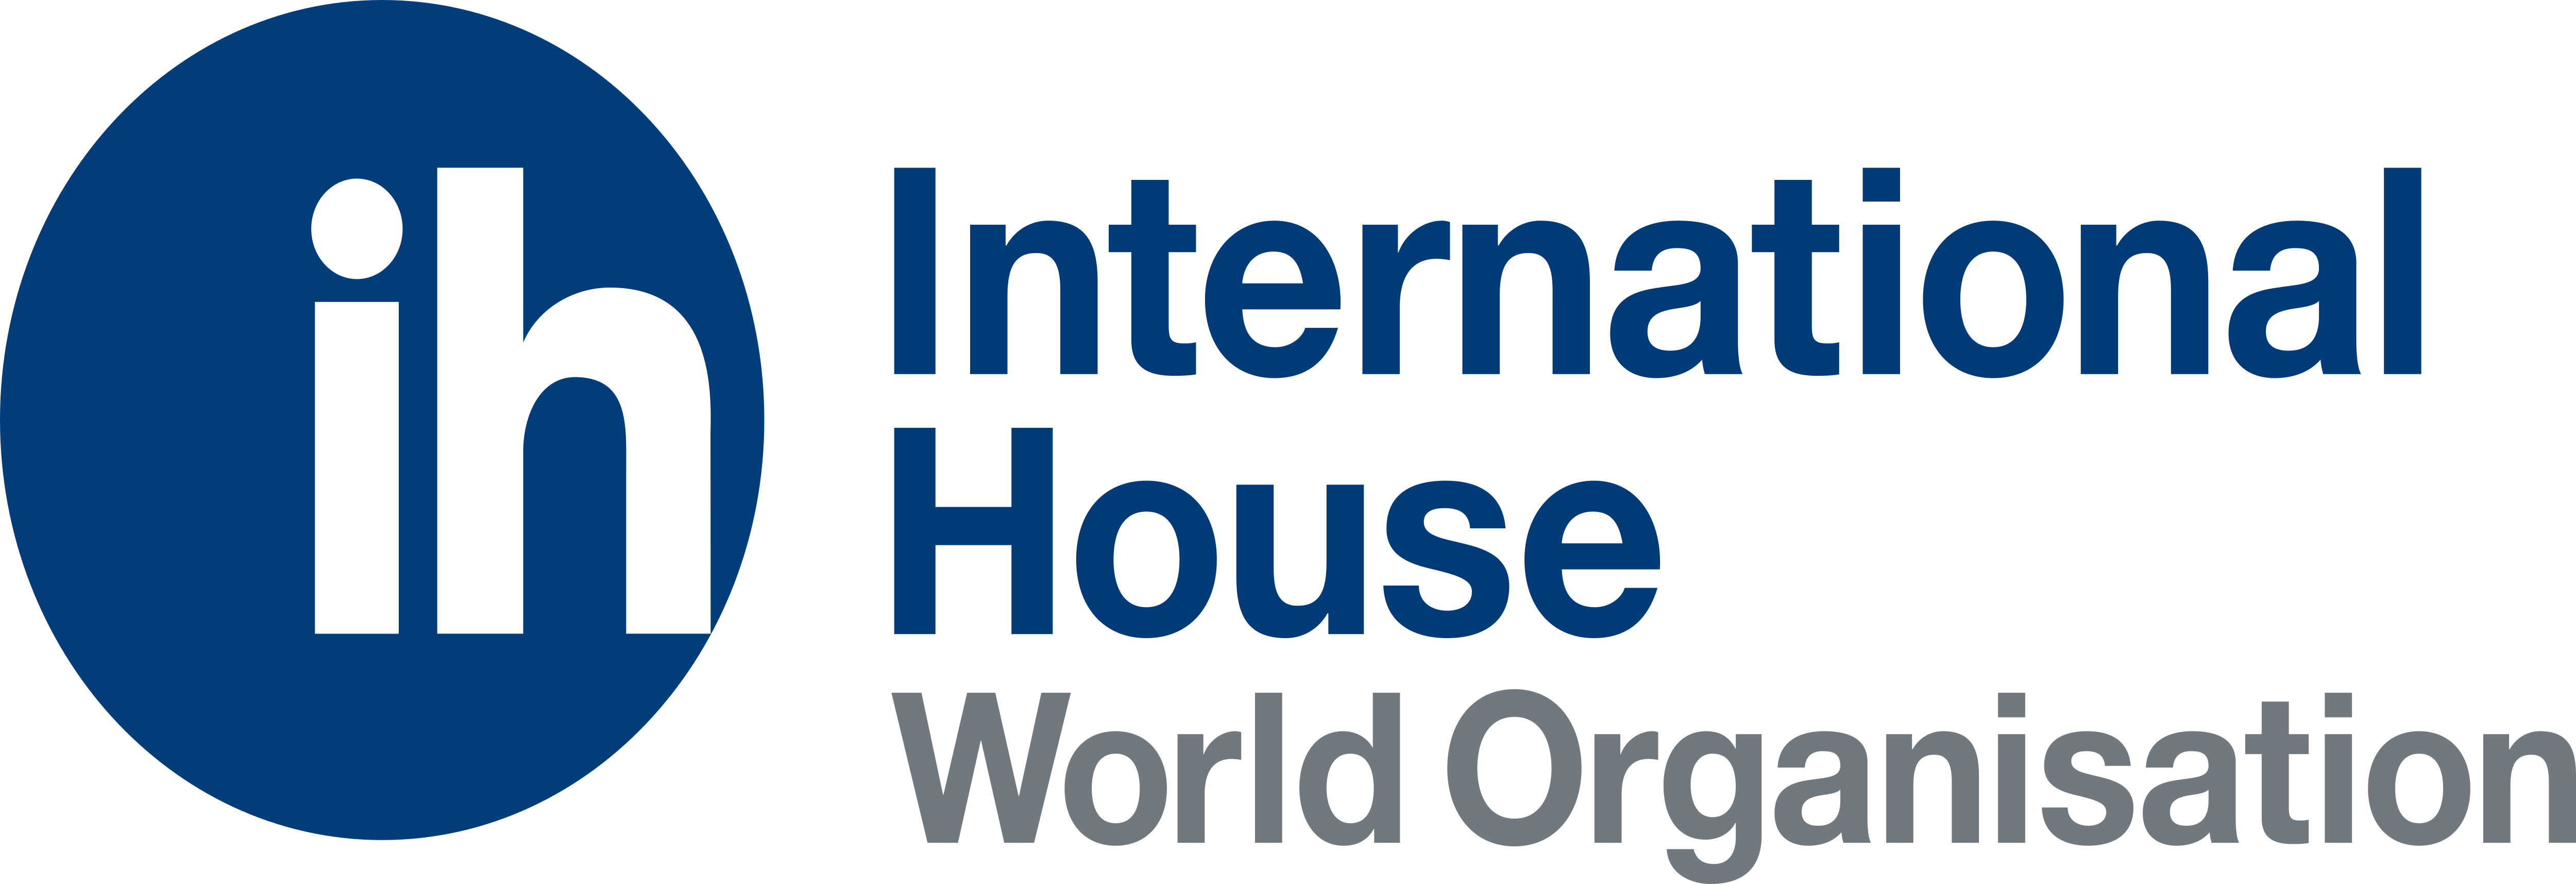 International House Logos Download